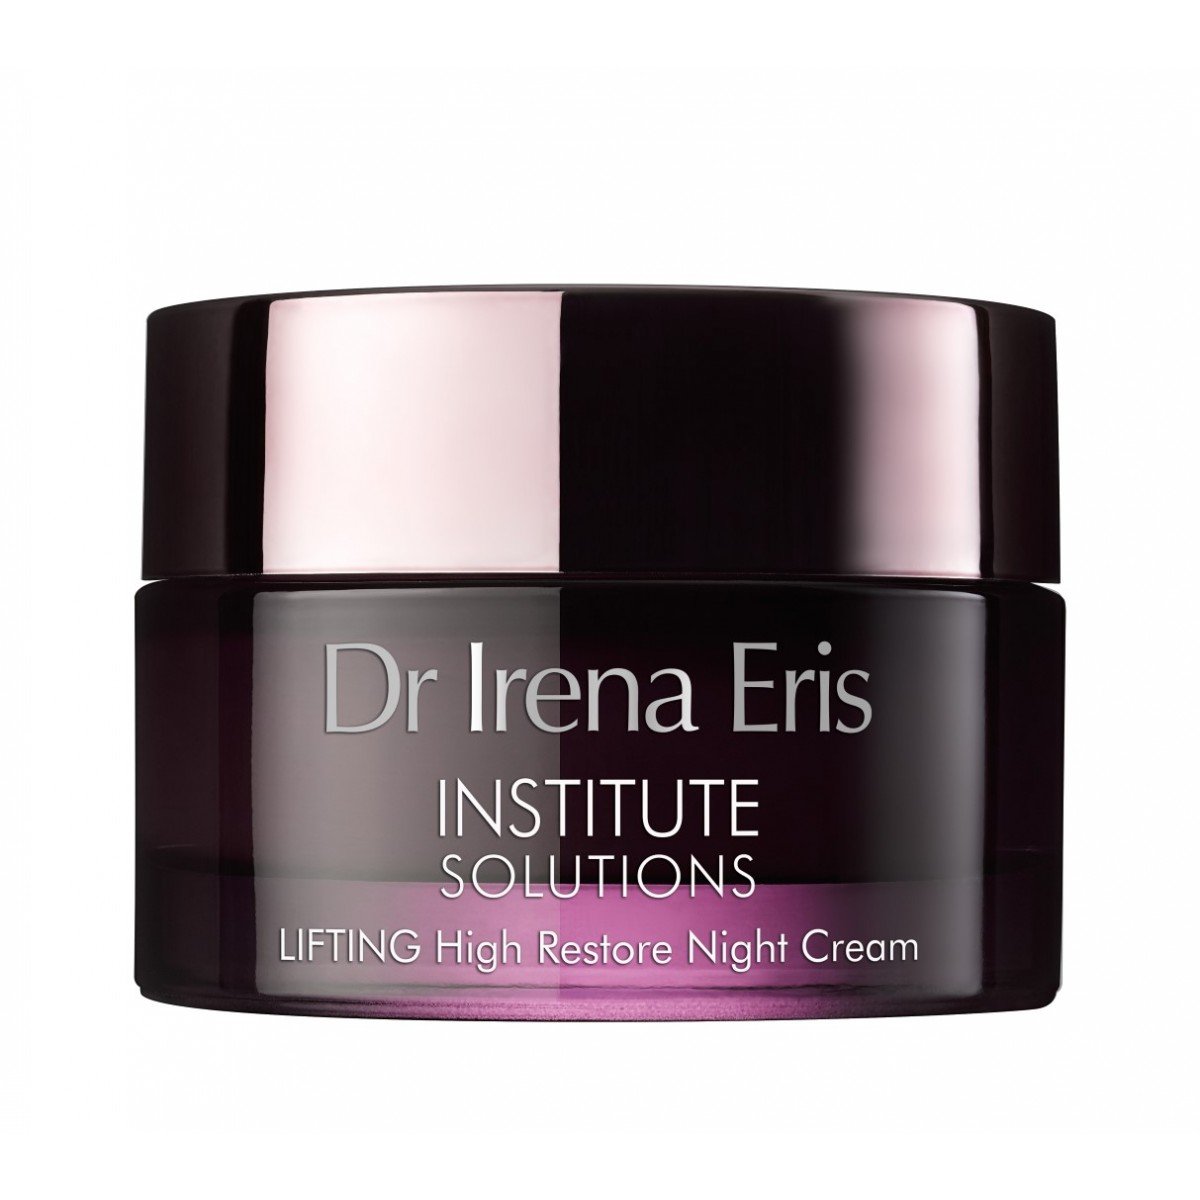 Dr. Irena Eris INSTITUTE SOLUTIONS High Restore Night Cream LIFTING 50 ml.